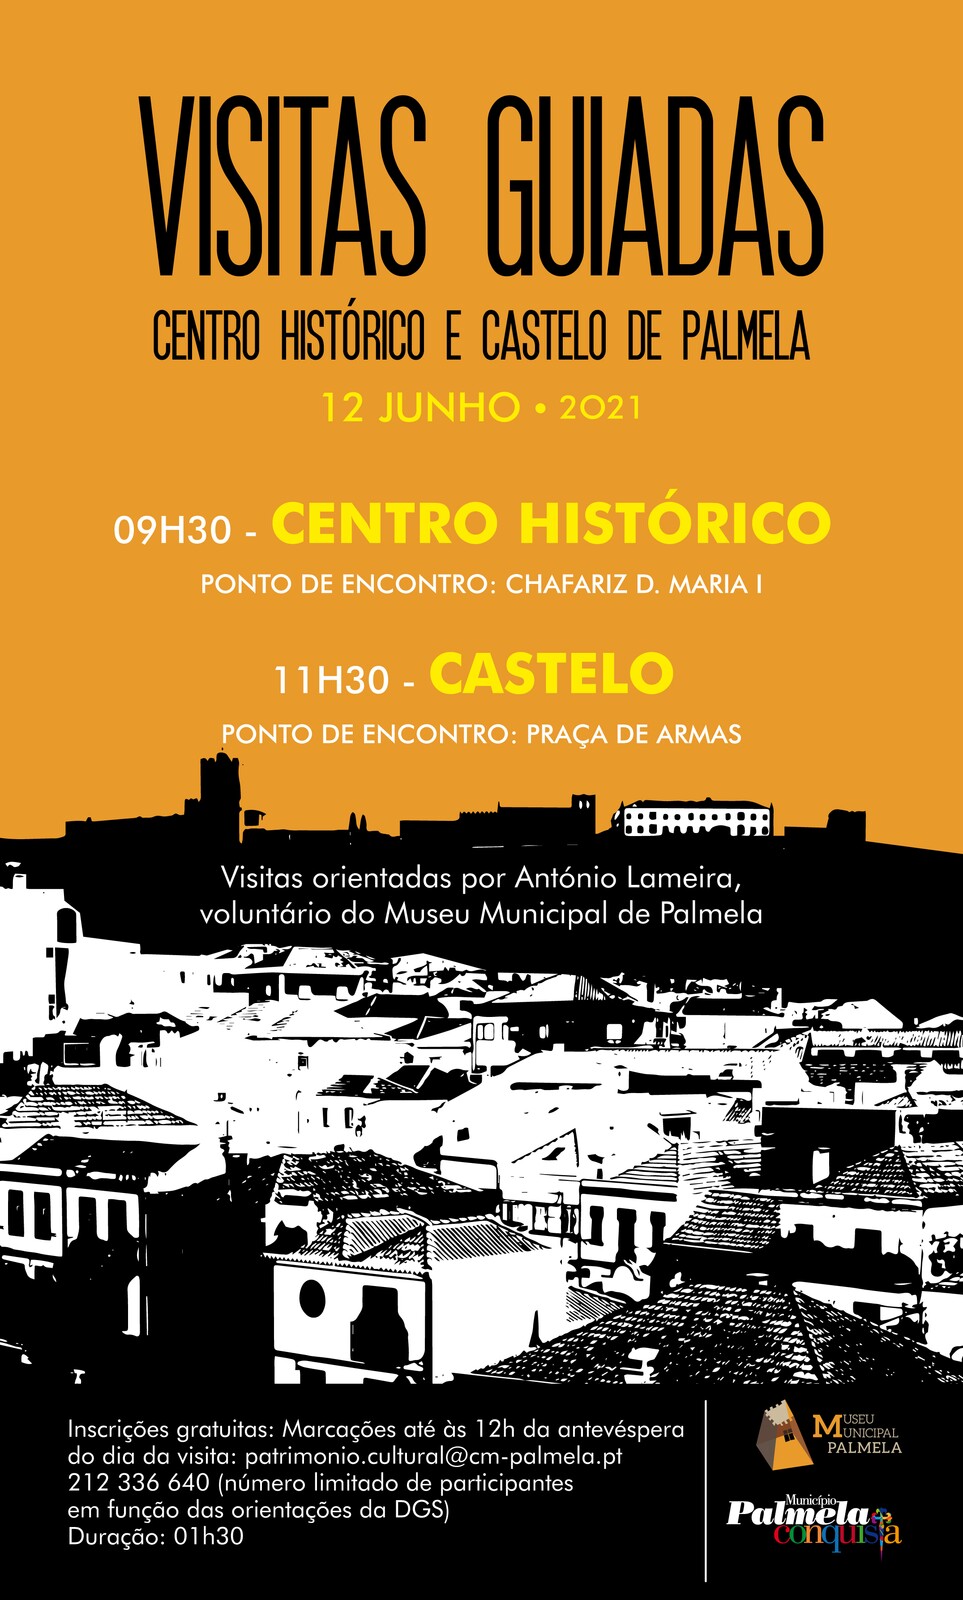 VISITA GUIADA CENTRO HISTÓRICO E CASTELO DE PALMELA 